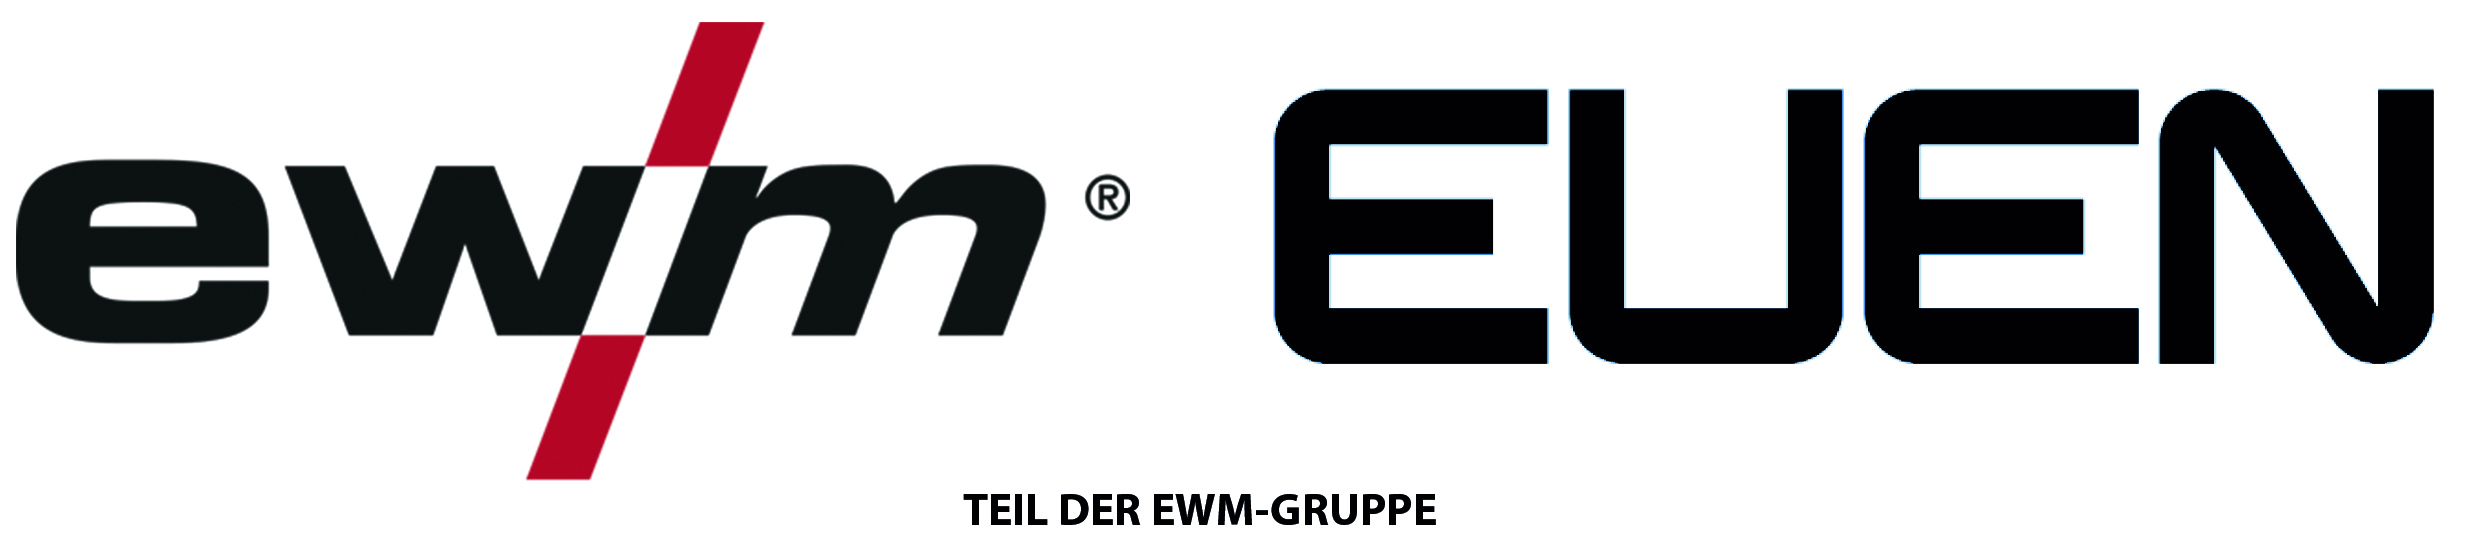 ewm images/logo/ewm-Euen-logo2.jpg